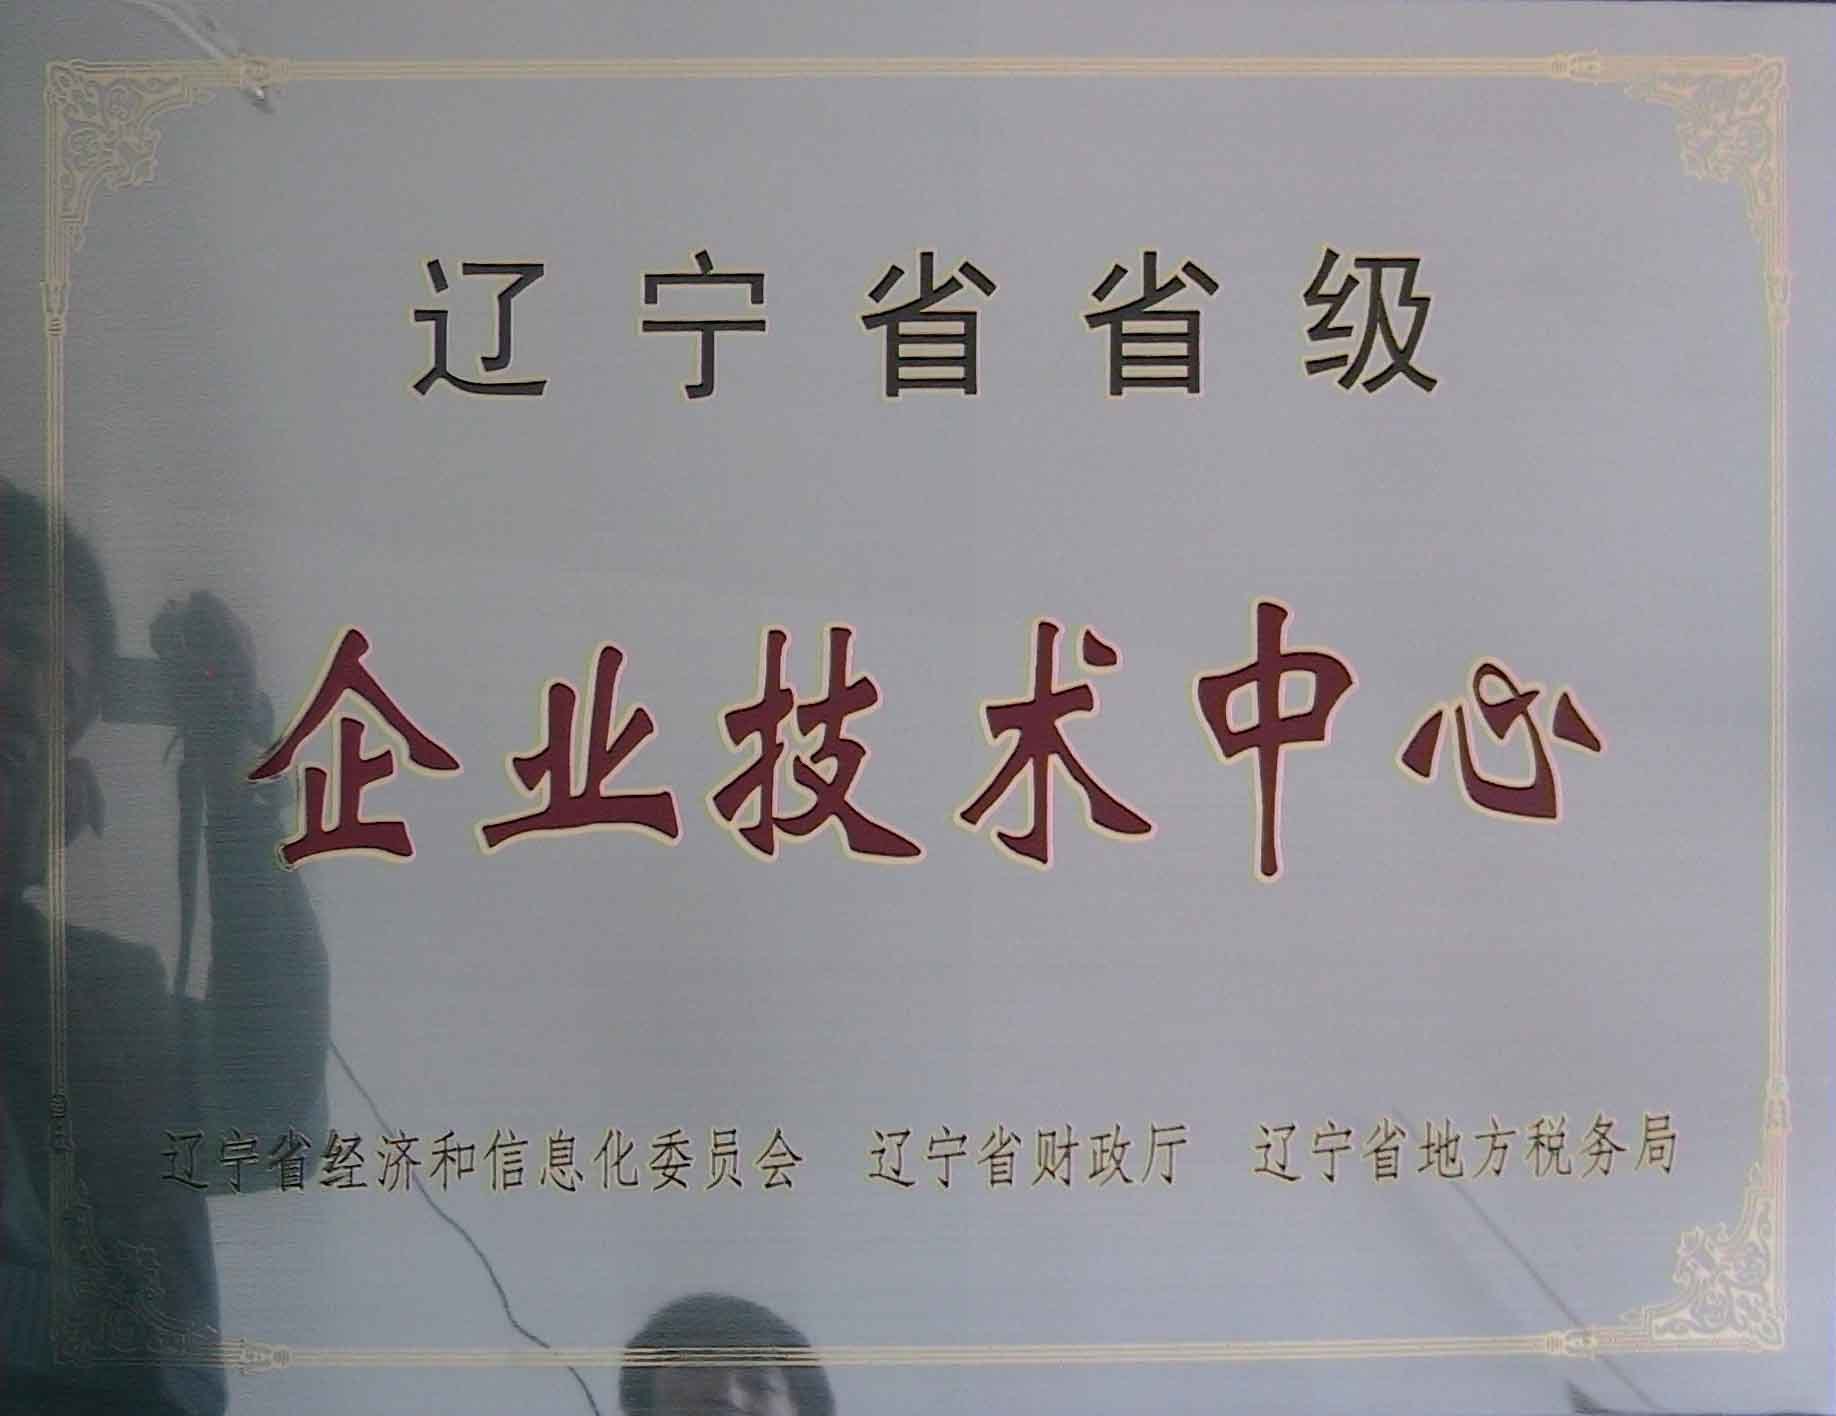 辽宁省企业技术中心